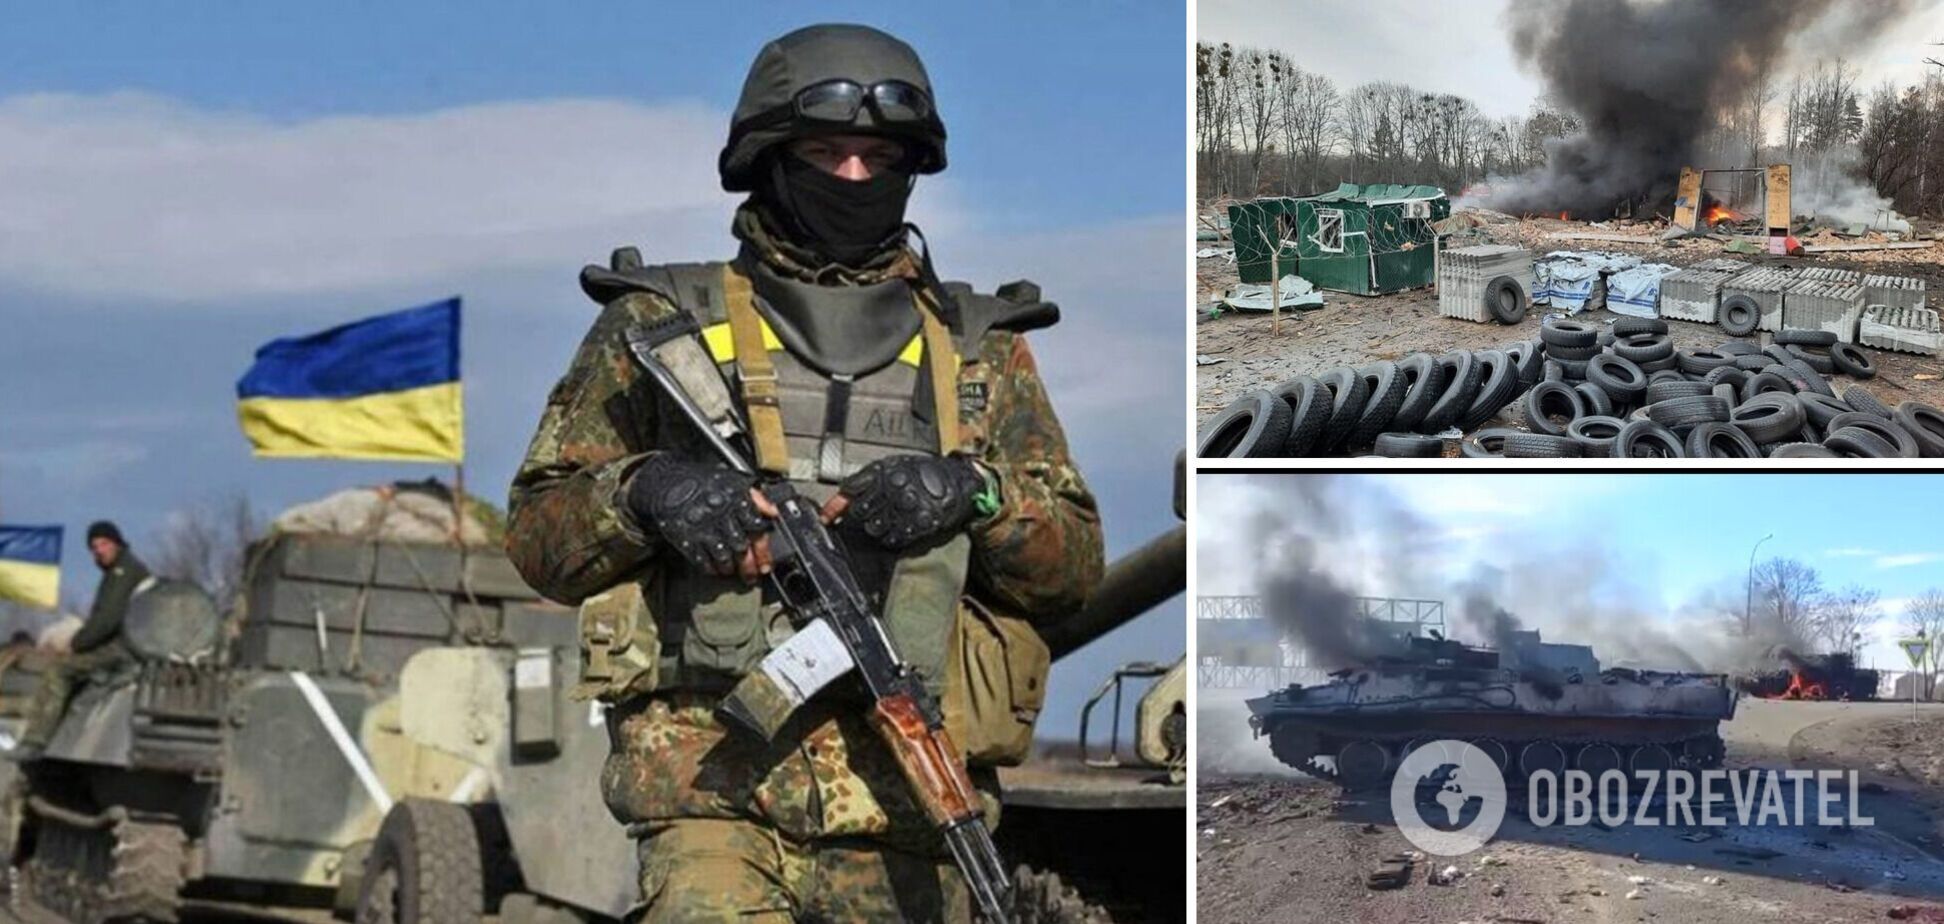 Путин пошел войной на Украину: ВСУ дают отпор противнику, у россиян большие потери в технике и живой силе. Главное о ситуации (обновляется)